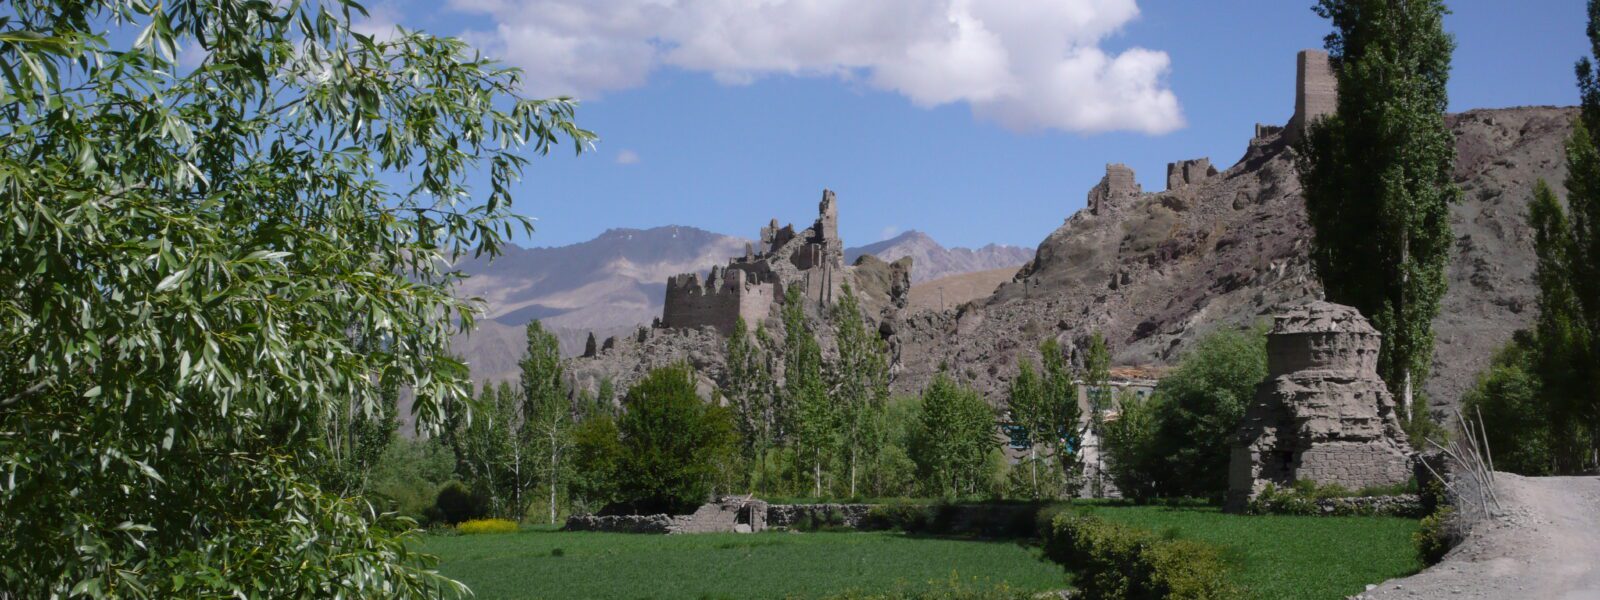 Chiktan,Ladakh,Kanji Nala,Purigpa,Razi Khar